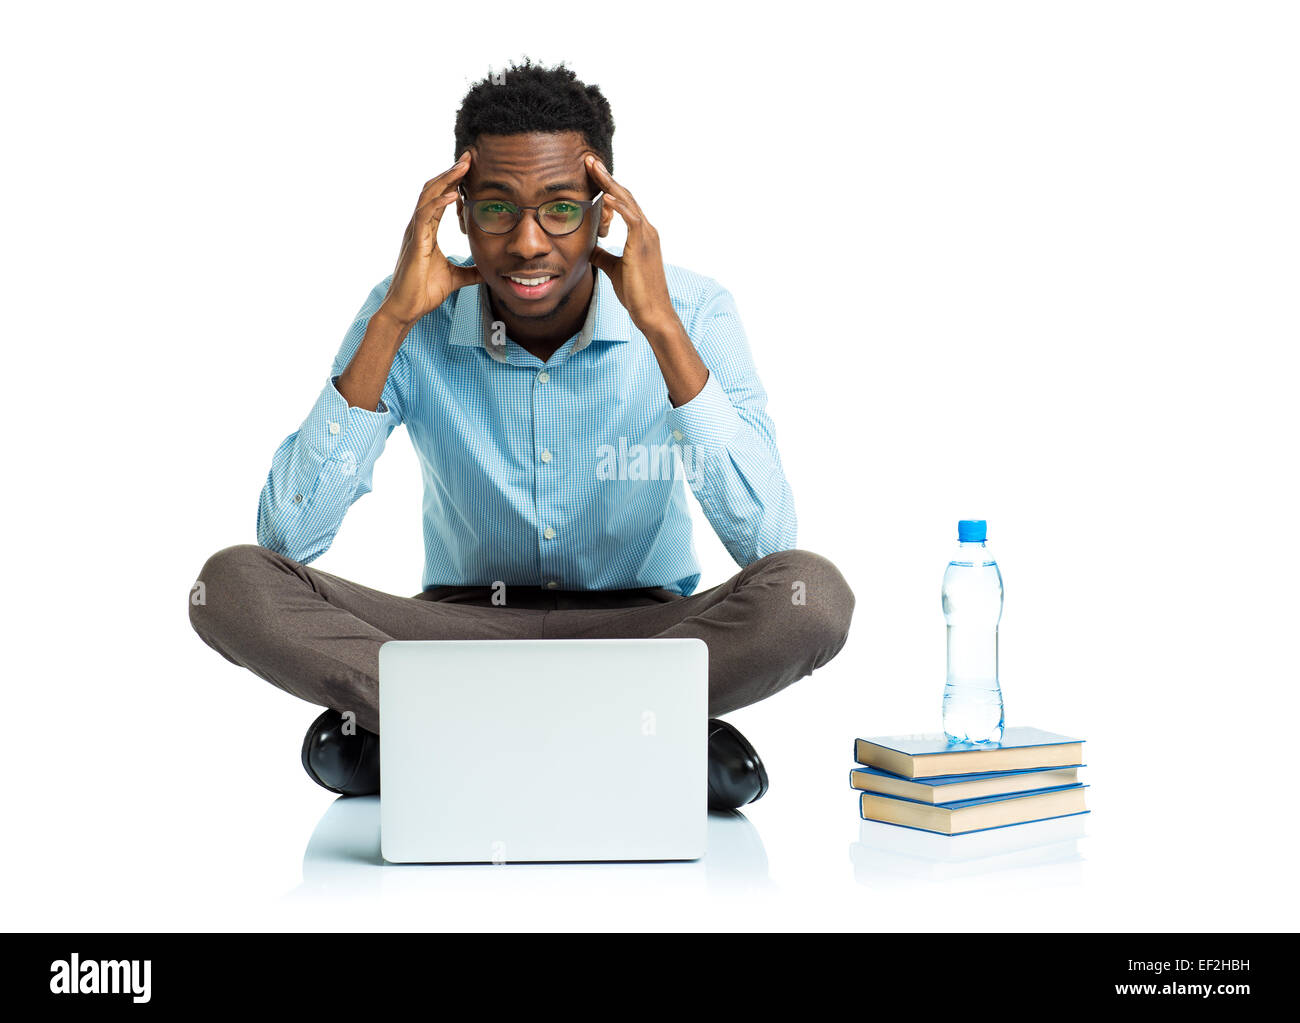 African American college student avec maux de tête assis sur fond blanc avec ordinateur portable et quelques livres Banque D'Images